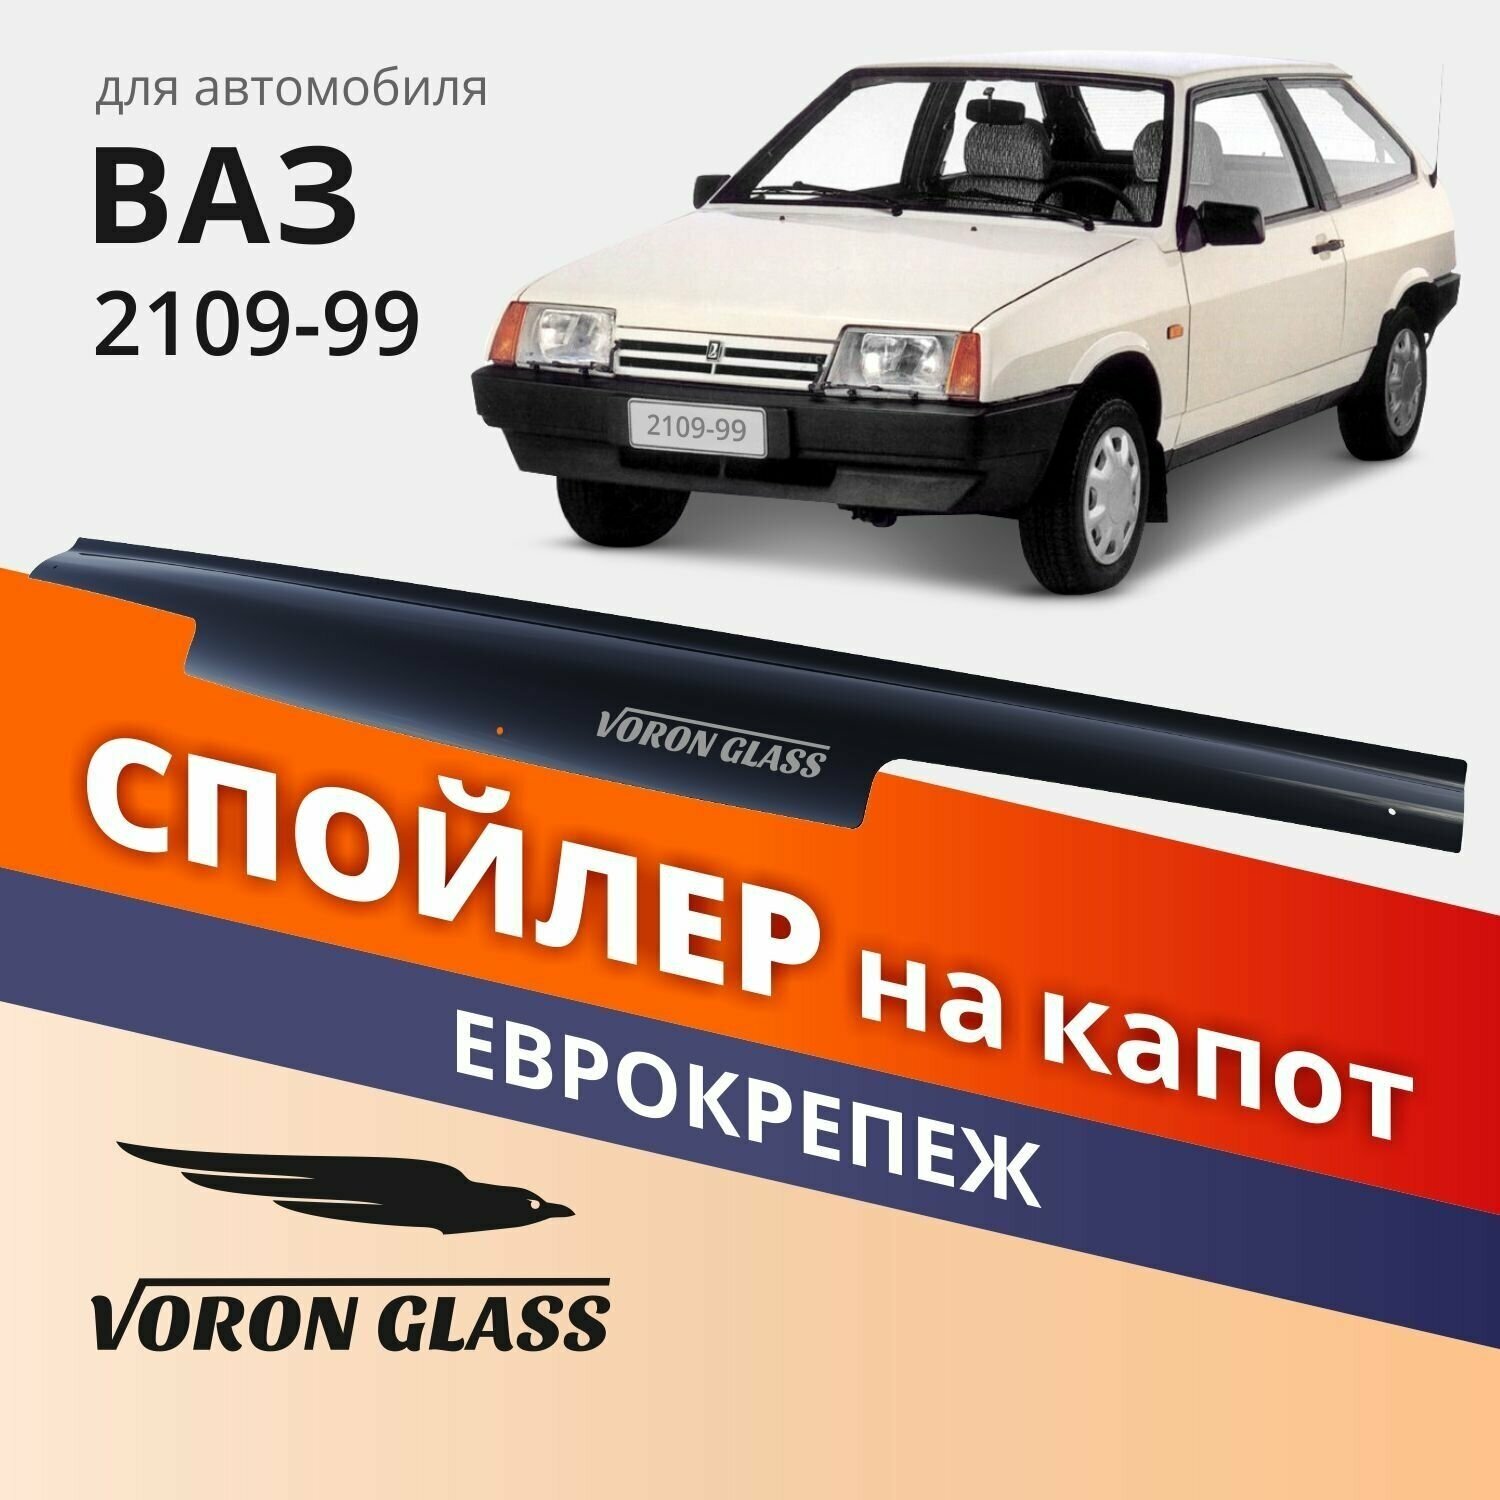 Дефлектор капота спойлер на автомобиль ВАЗ 2108-99 VORON GLASS с еврокрепежом